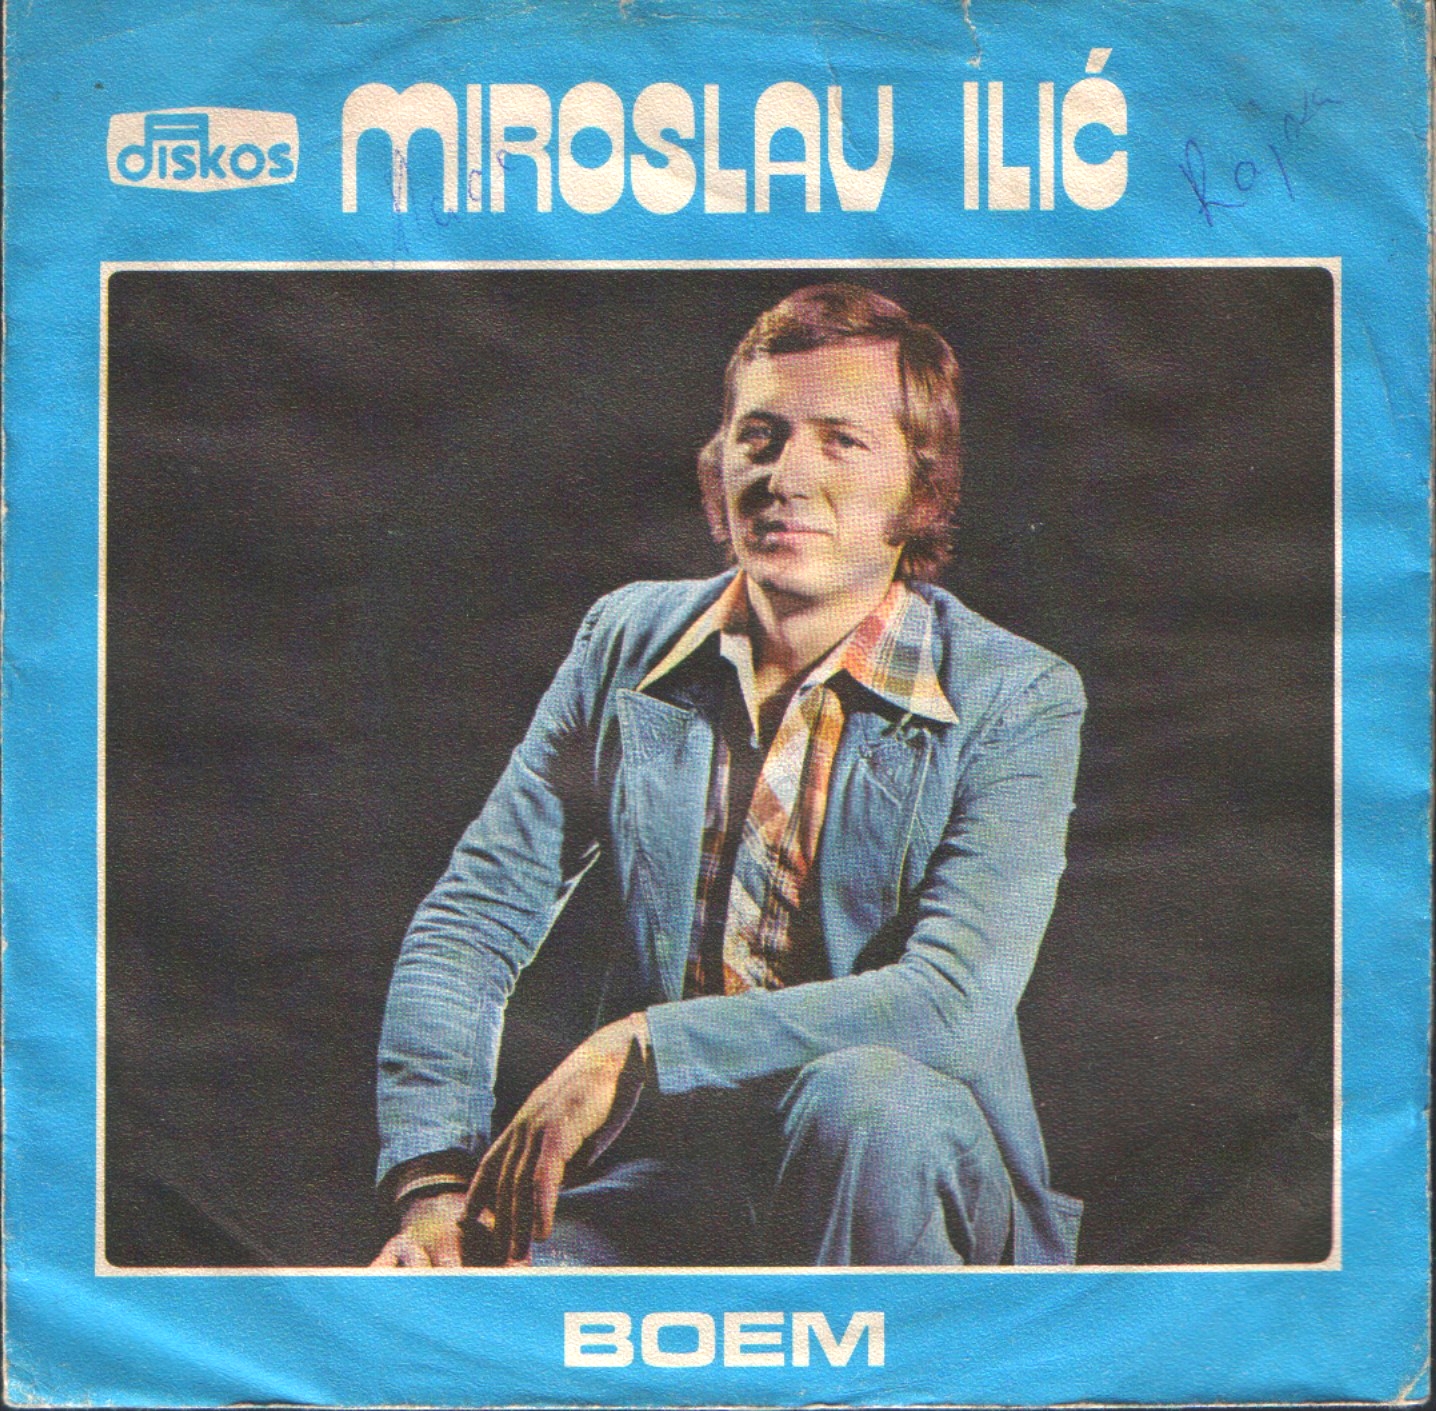 1976 Miroslav Ilic omot 1